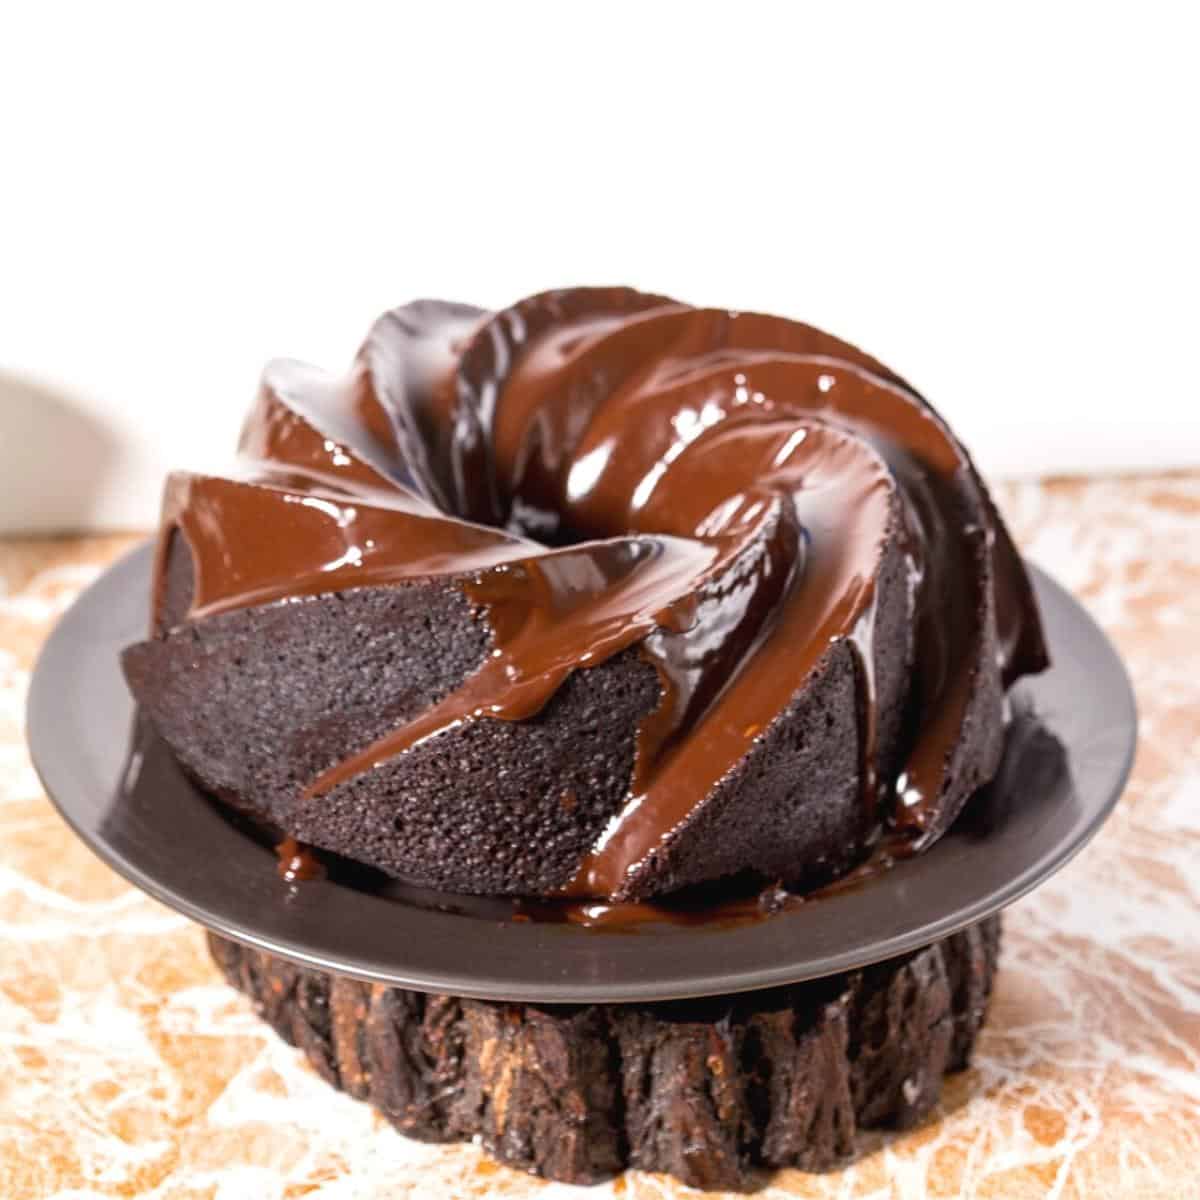 A chocolate glazed bundt cake